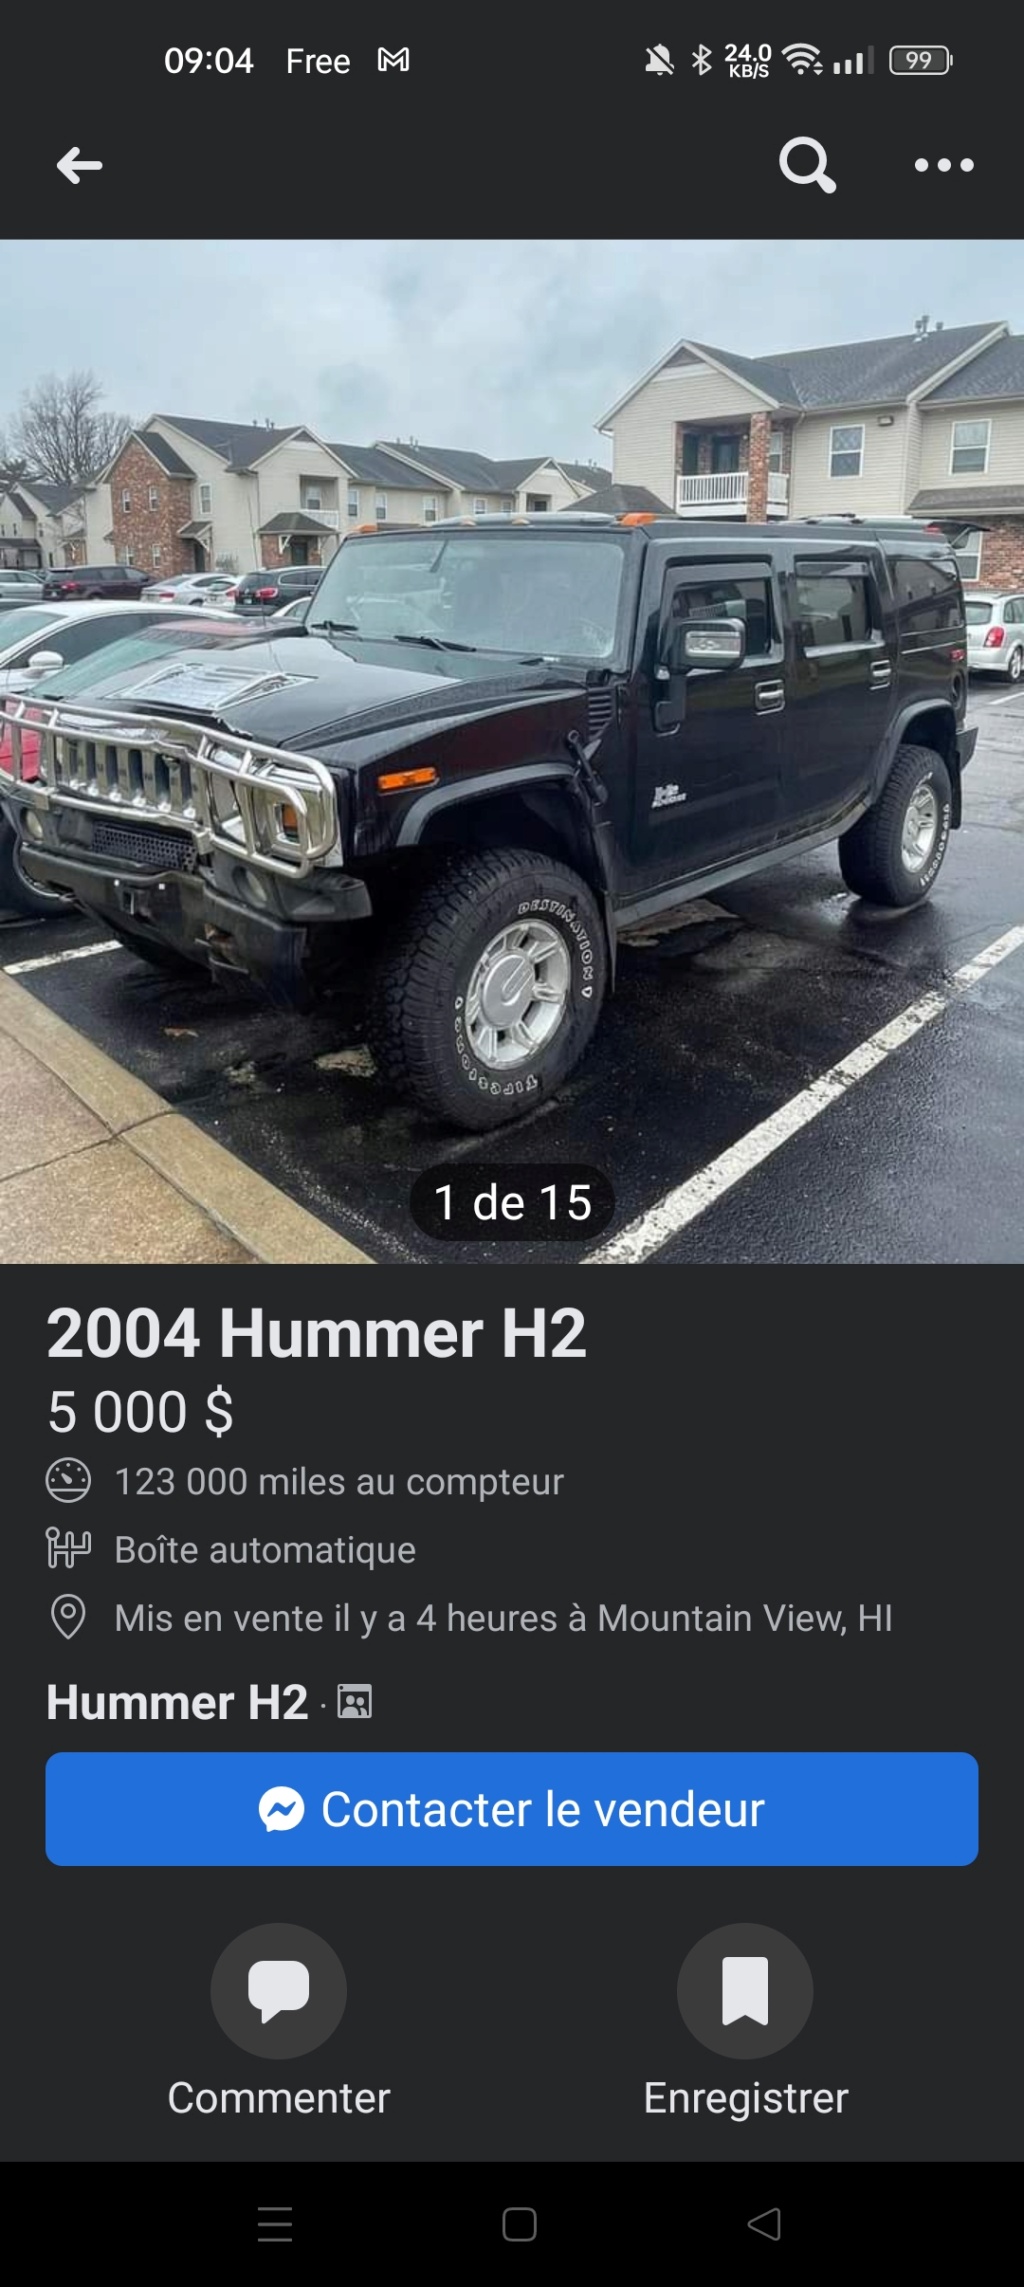 Combien coûte un Hummer H2 accidenté chez l'oncle Sam ? Screen31